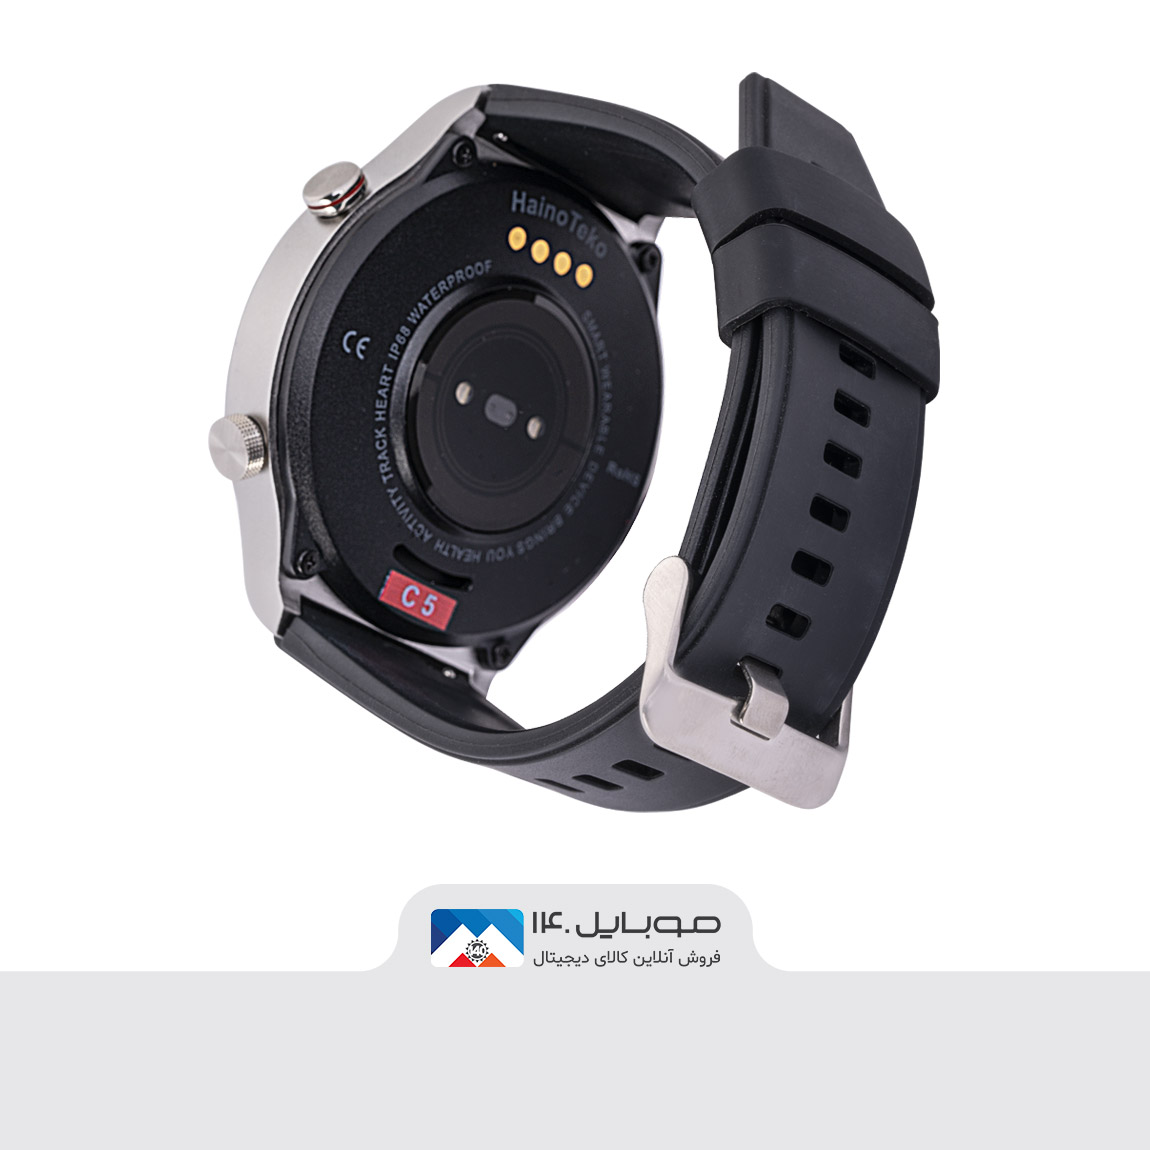 Hainoteko C5 Smart Watch 2